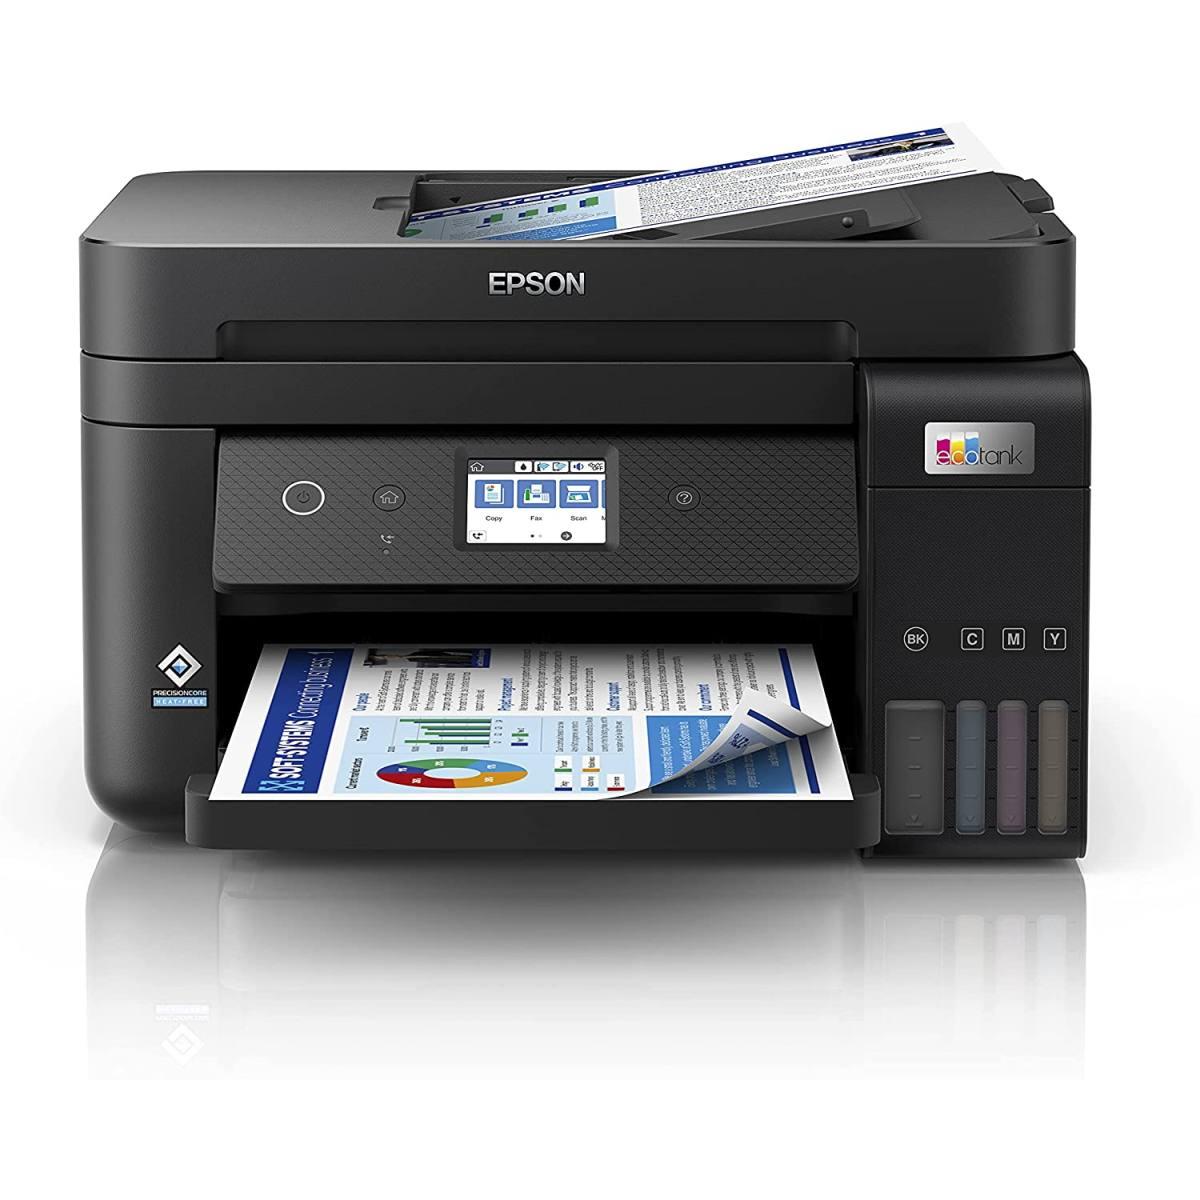 Modalità di stampa: Bianco e nero; Formato Stampa: A4; Risoluzione stampa  colore max verticale: Non presente; Velocità di stampa b/n: 20 ppm;  Velocità